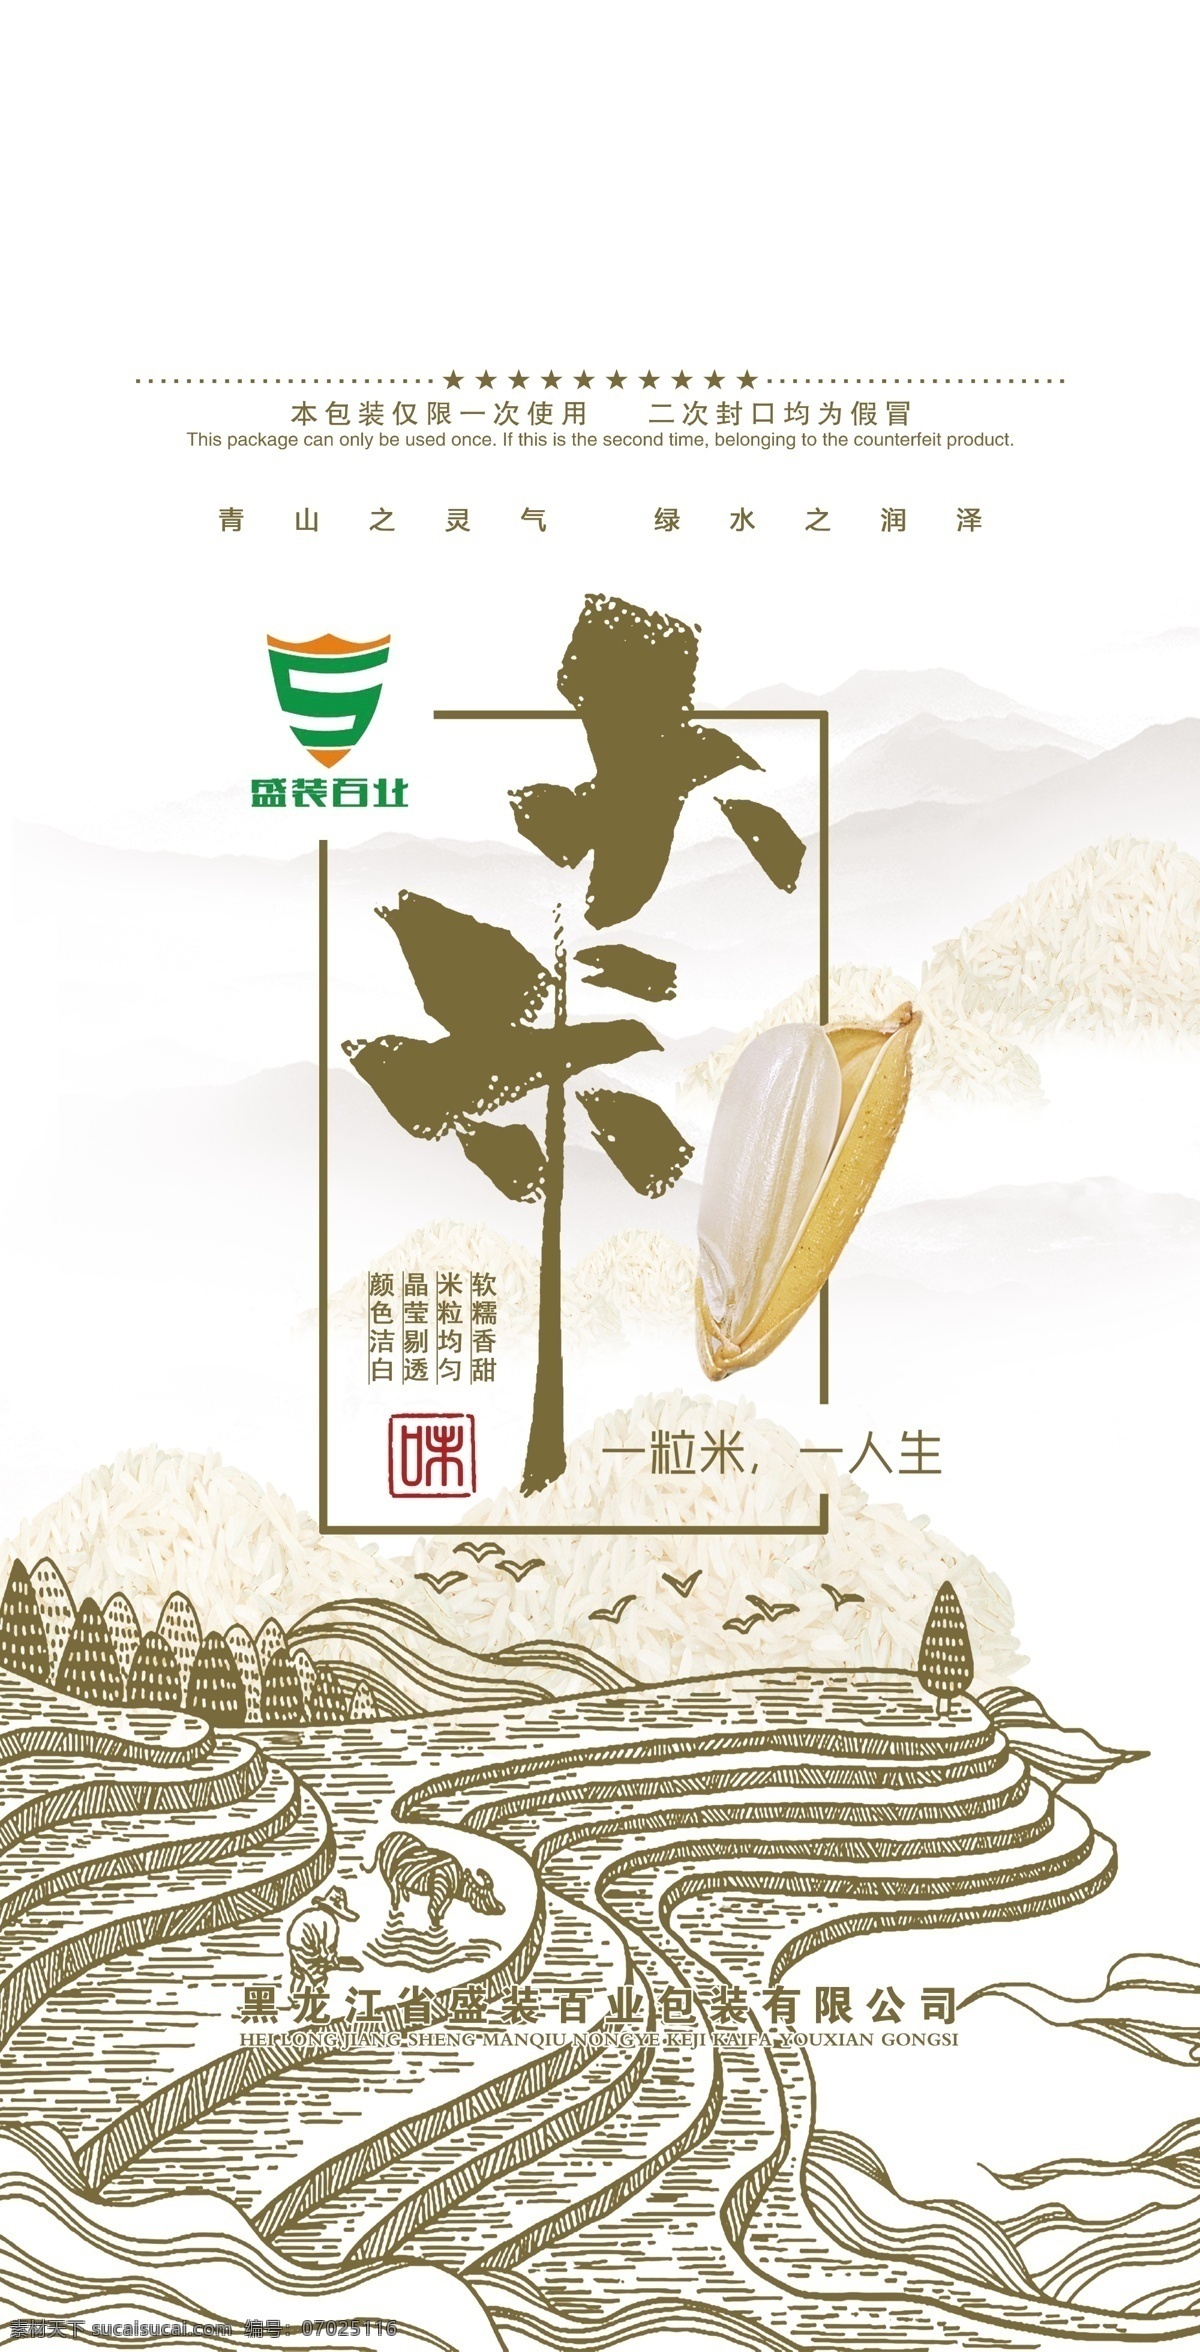 大米 包装 平面图 五常 长粒香 稻花香 水稻 大米包装 包装设计